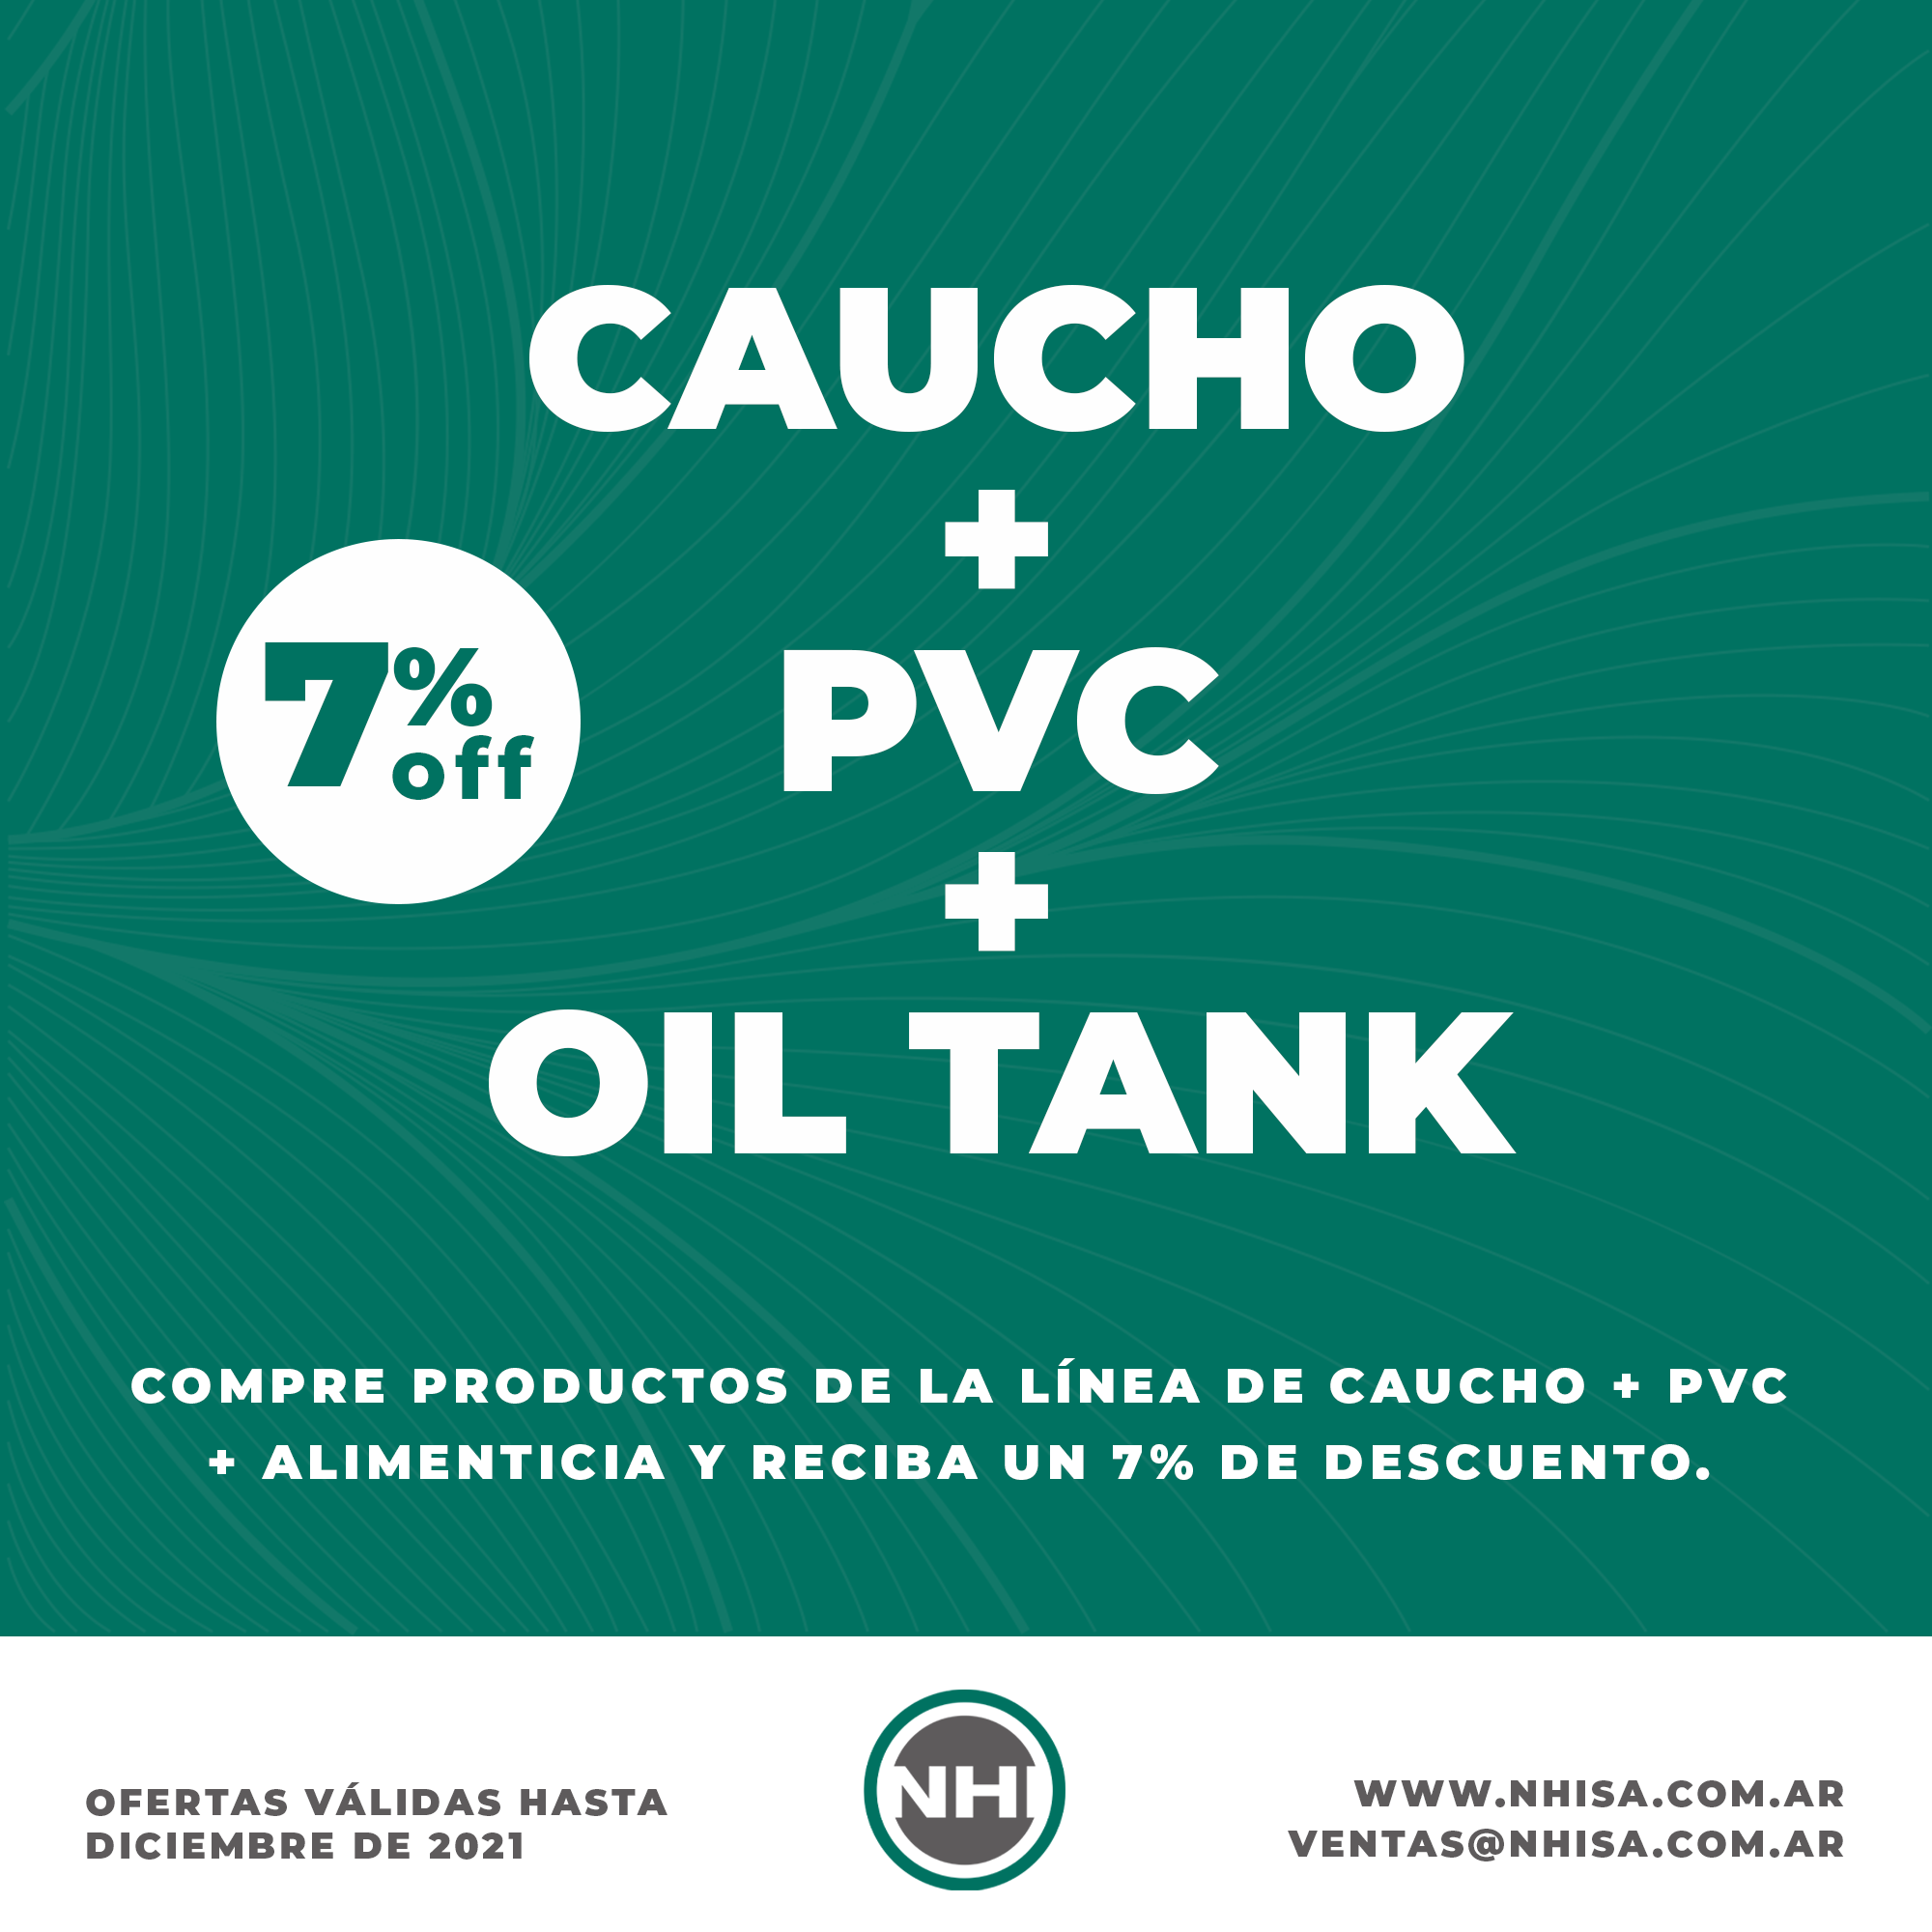 Caucho + PVC + Oil Tank-1